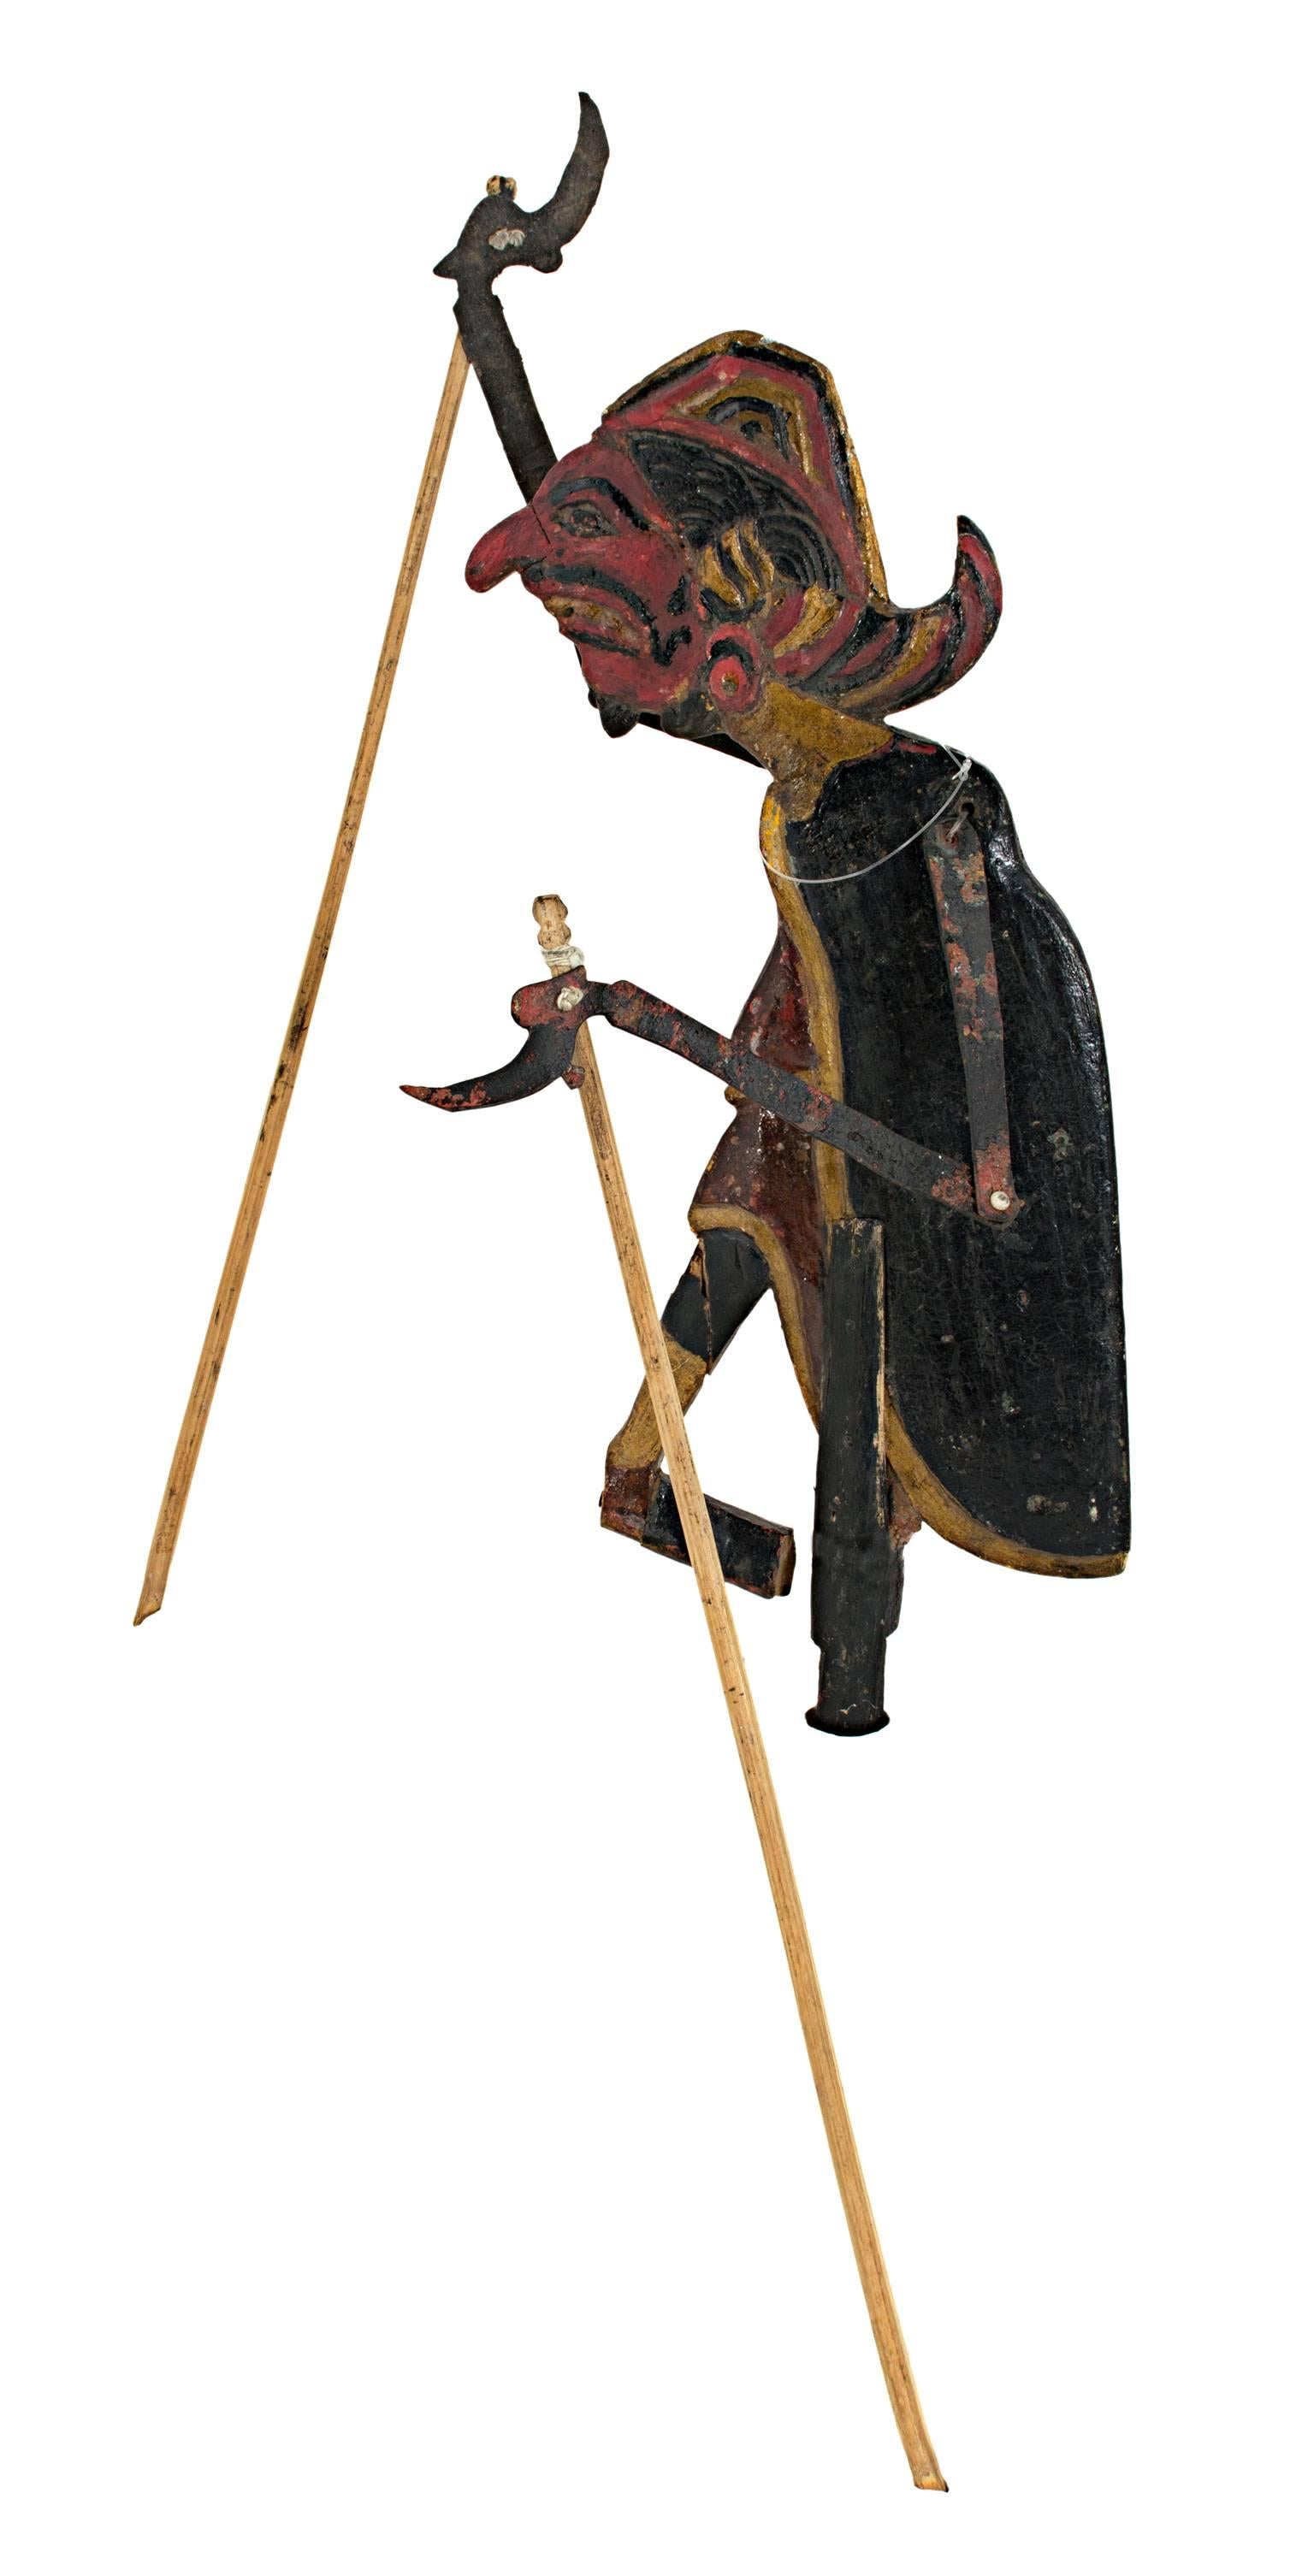 « Puppet (homme) en bois de feuillus » créé en Indonésie au 19e siècle